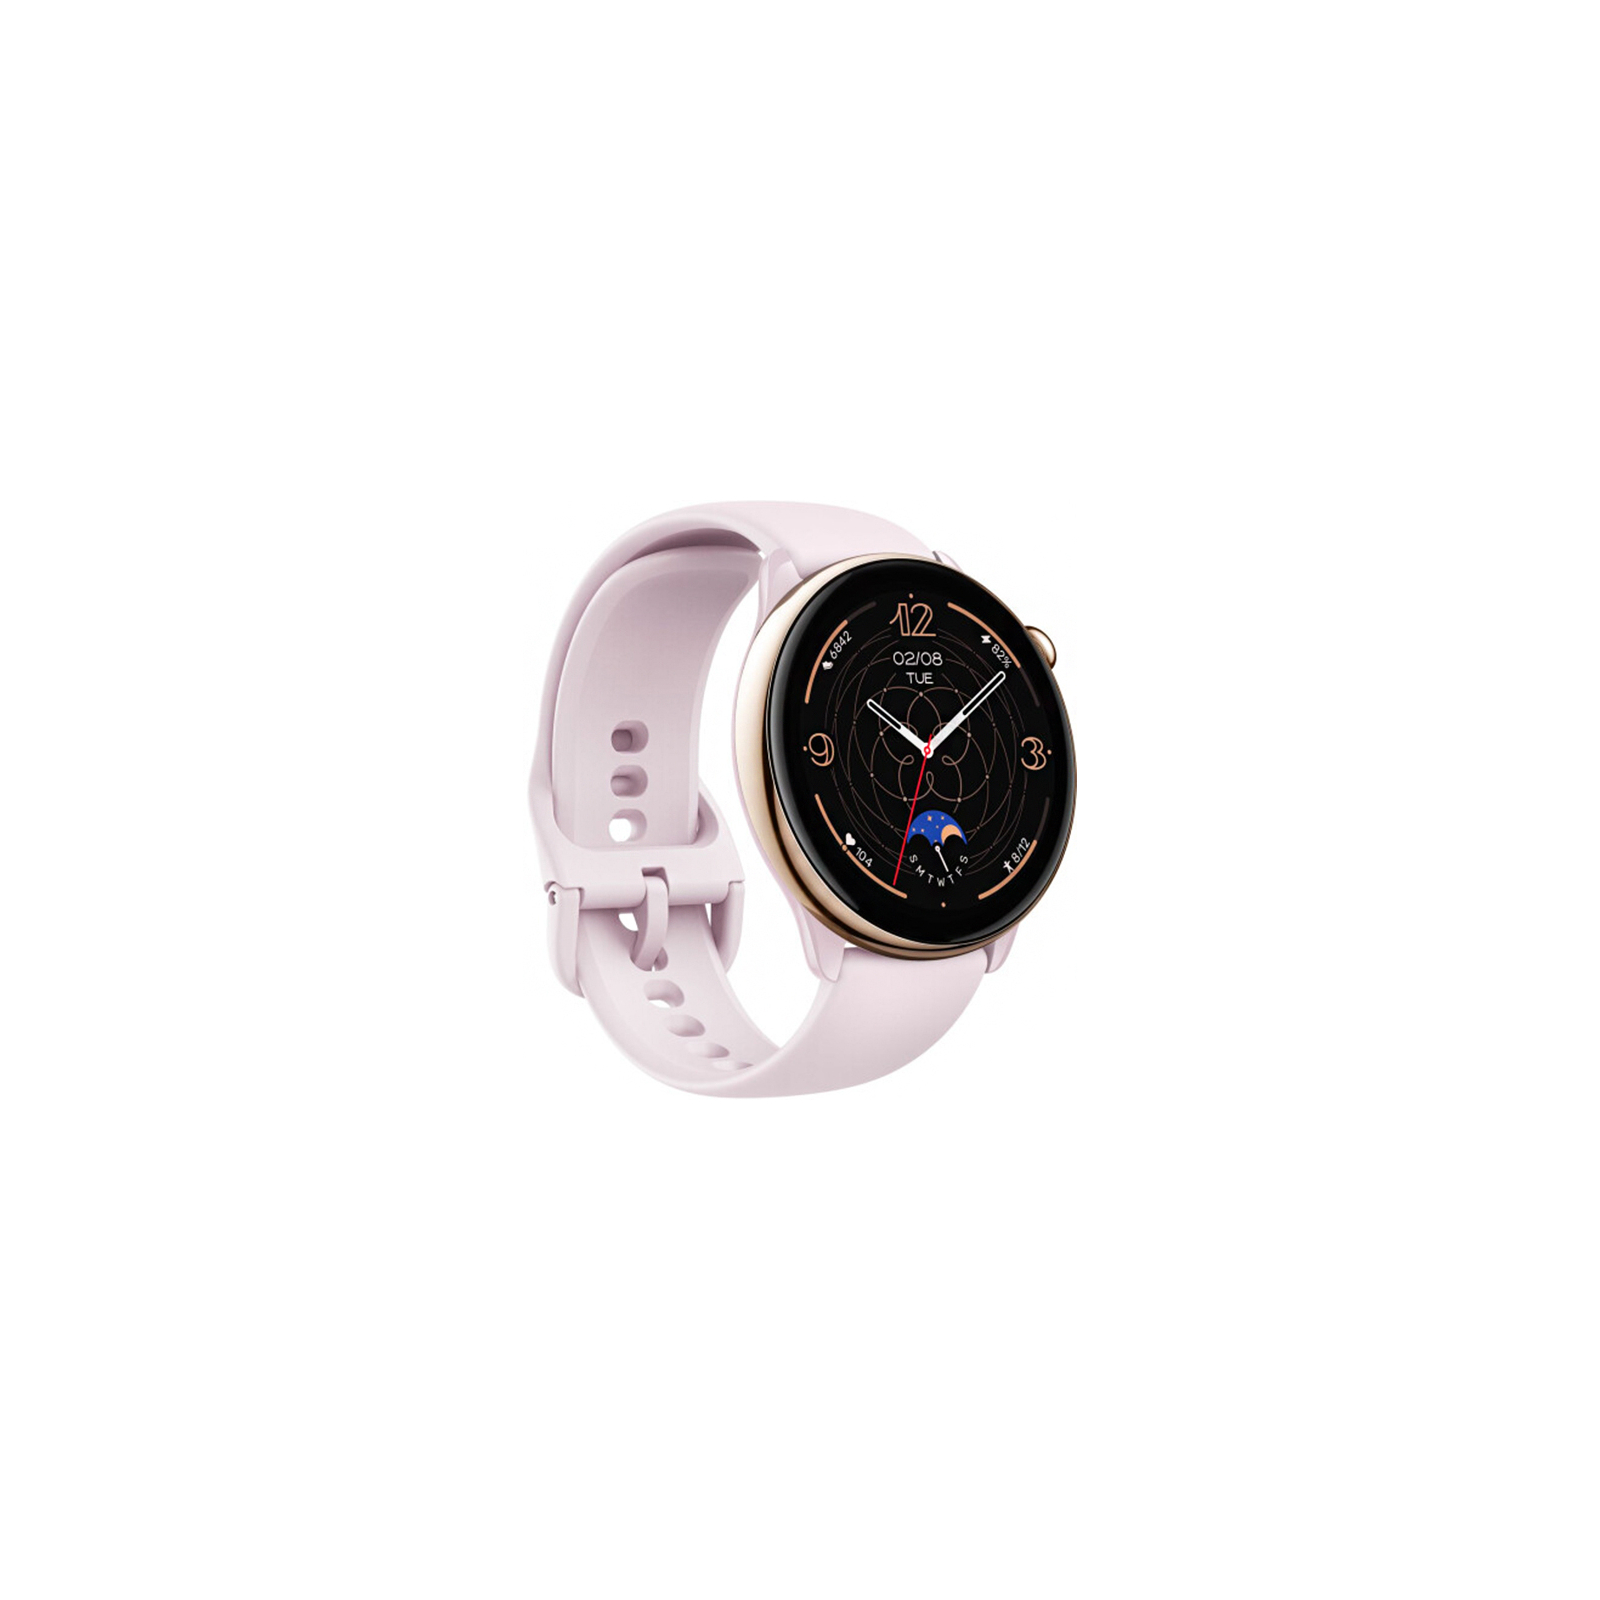 Смарт-часы Amazfit GTR Mini Misty Pink (989611) изображение 3